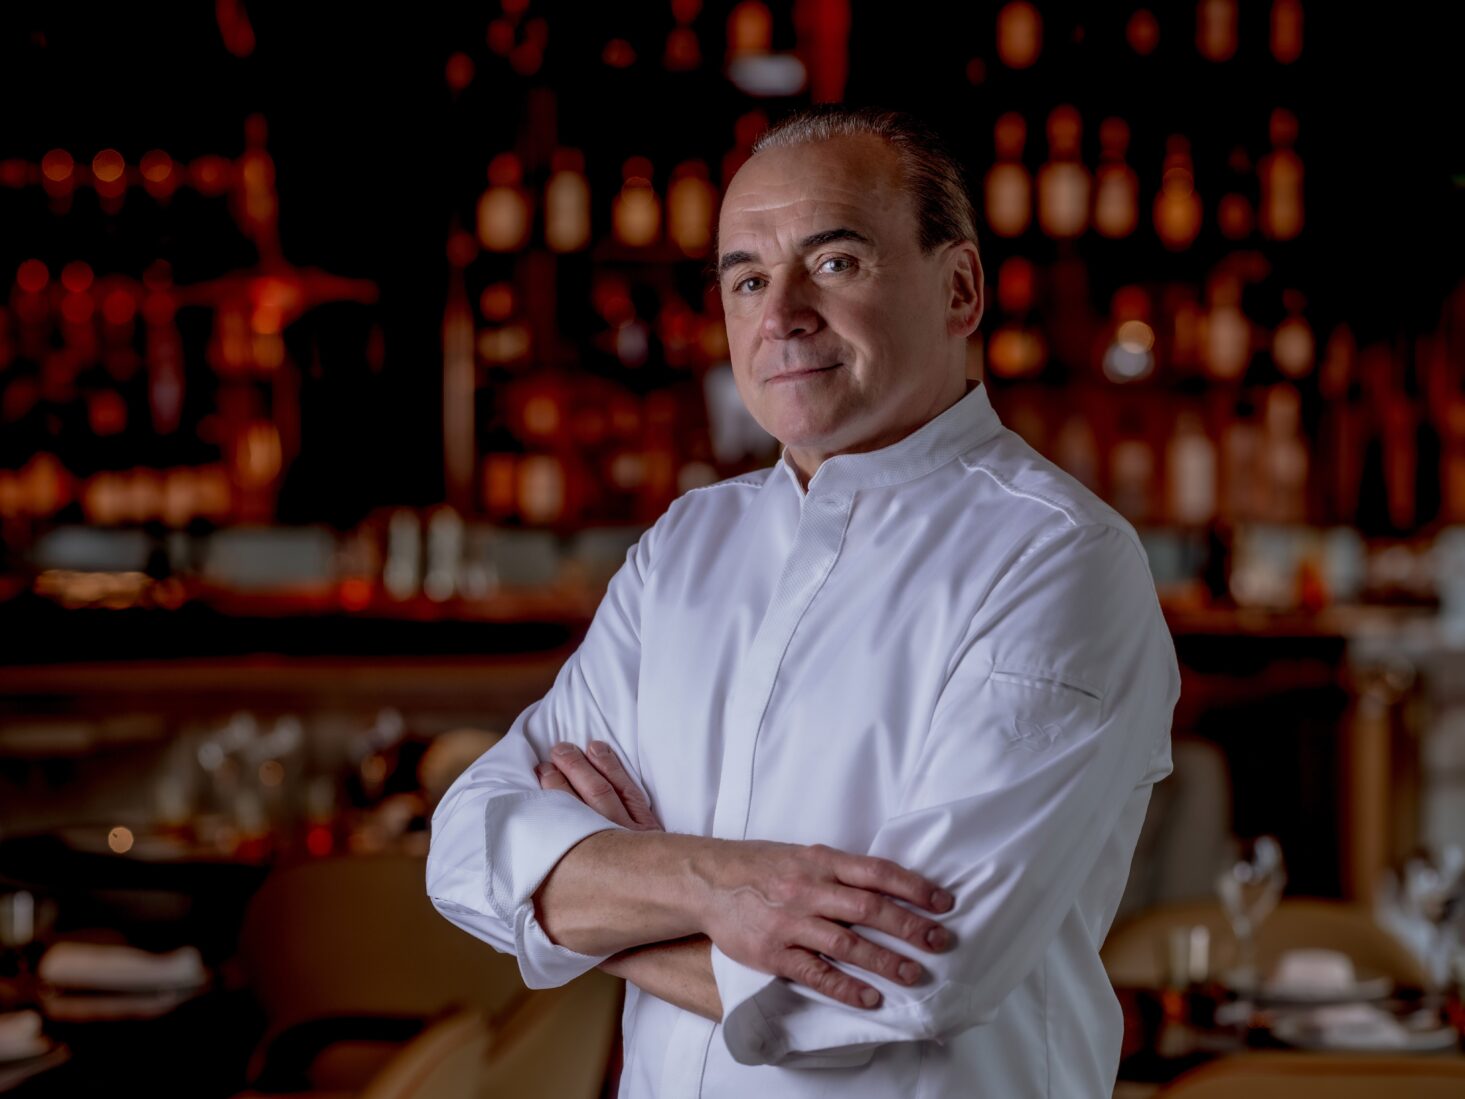 Meet the chef: Jean-Georges Vongerichten of Abc Kitchens